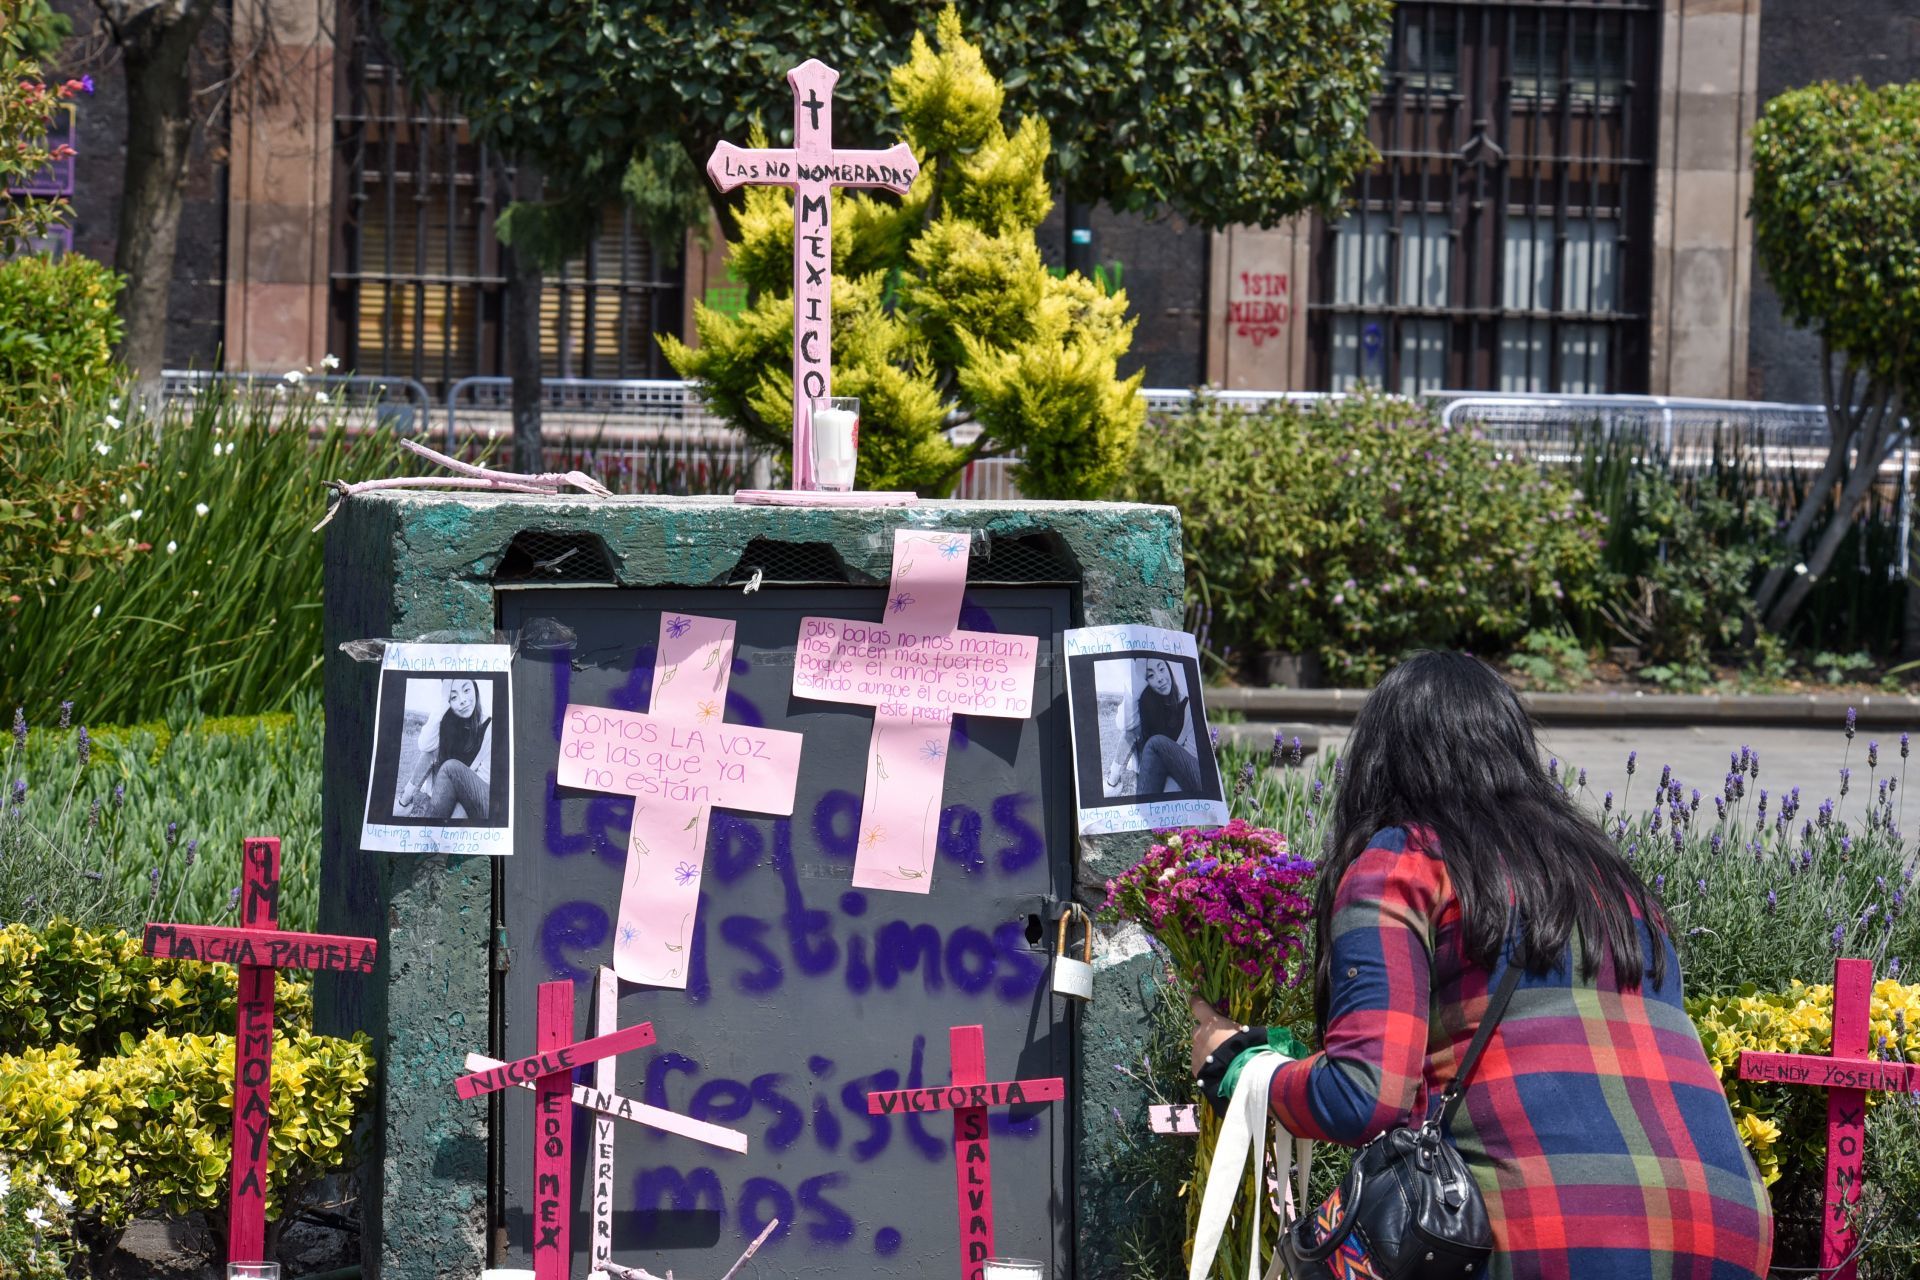 Los feminicidios en México han aumentado en cuanto a revictimización y brutalidad de los casos (Foto: Crisanta Espinoza Aguilar/Cuartoscuro)